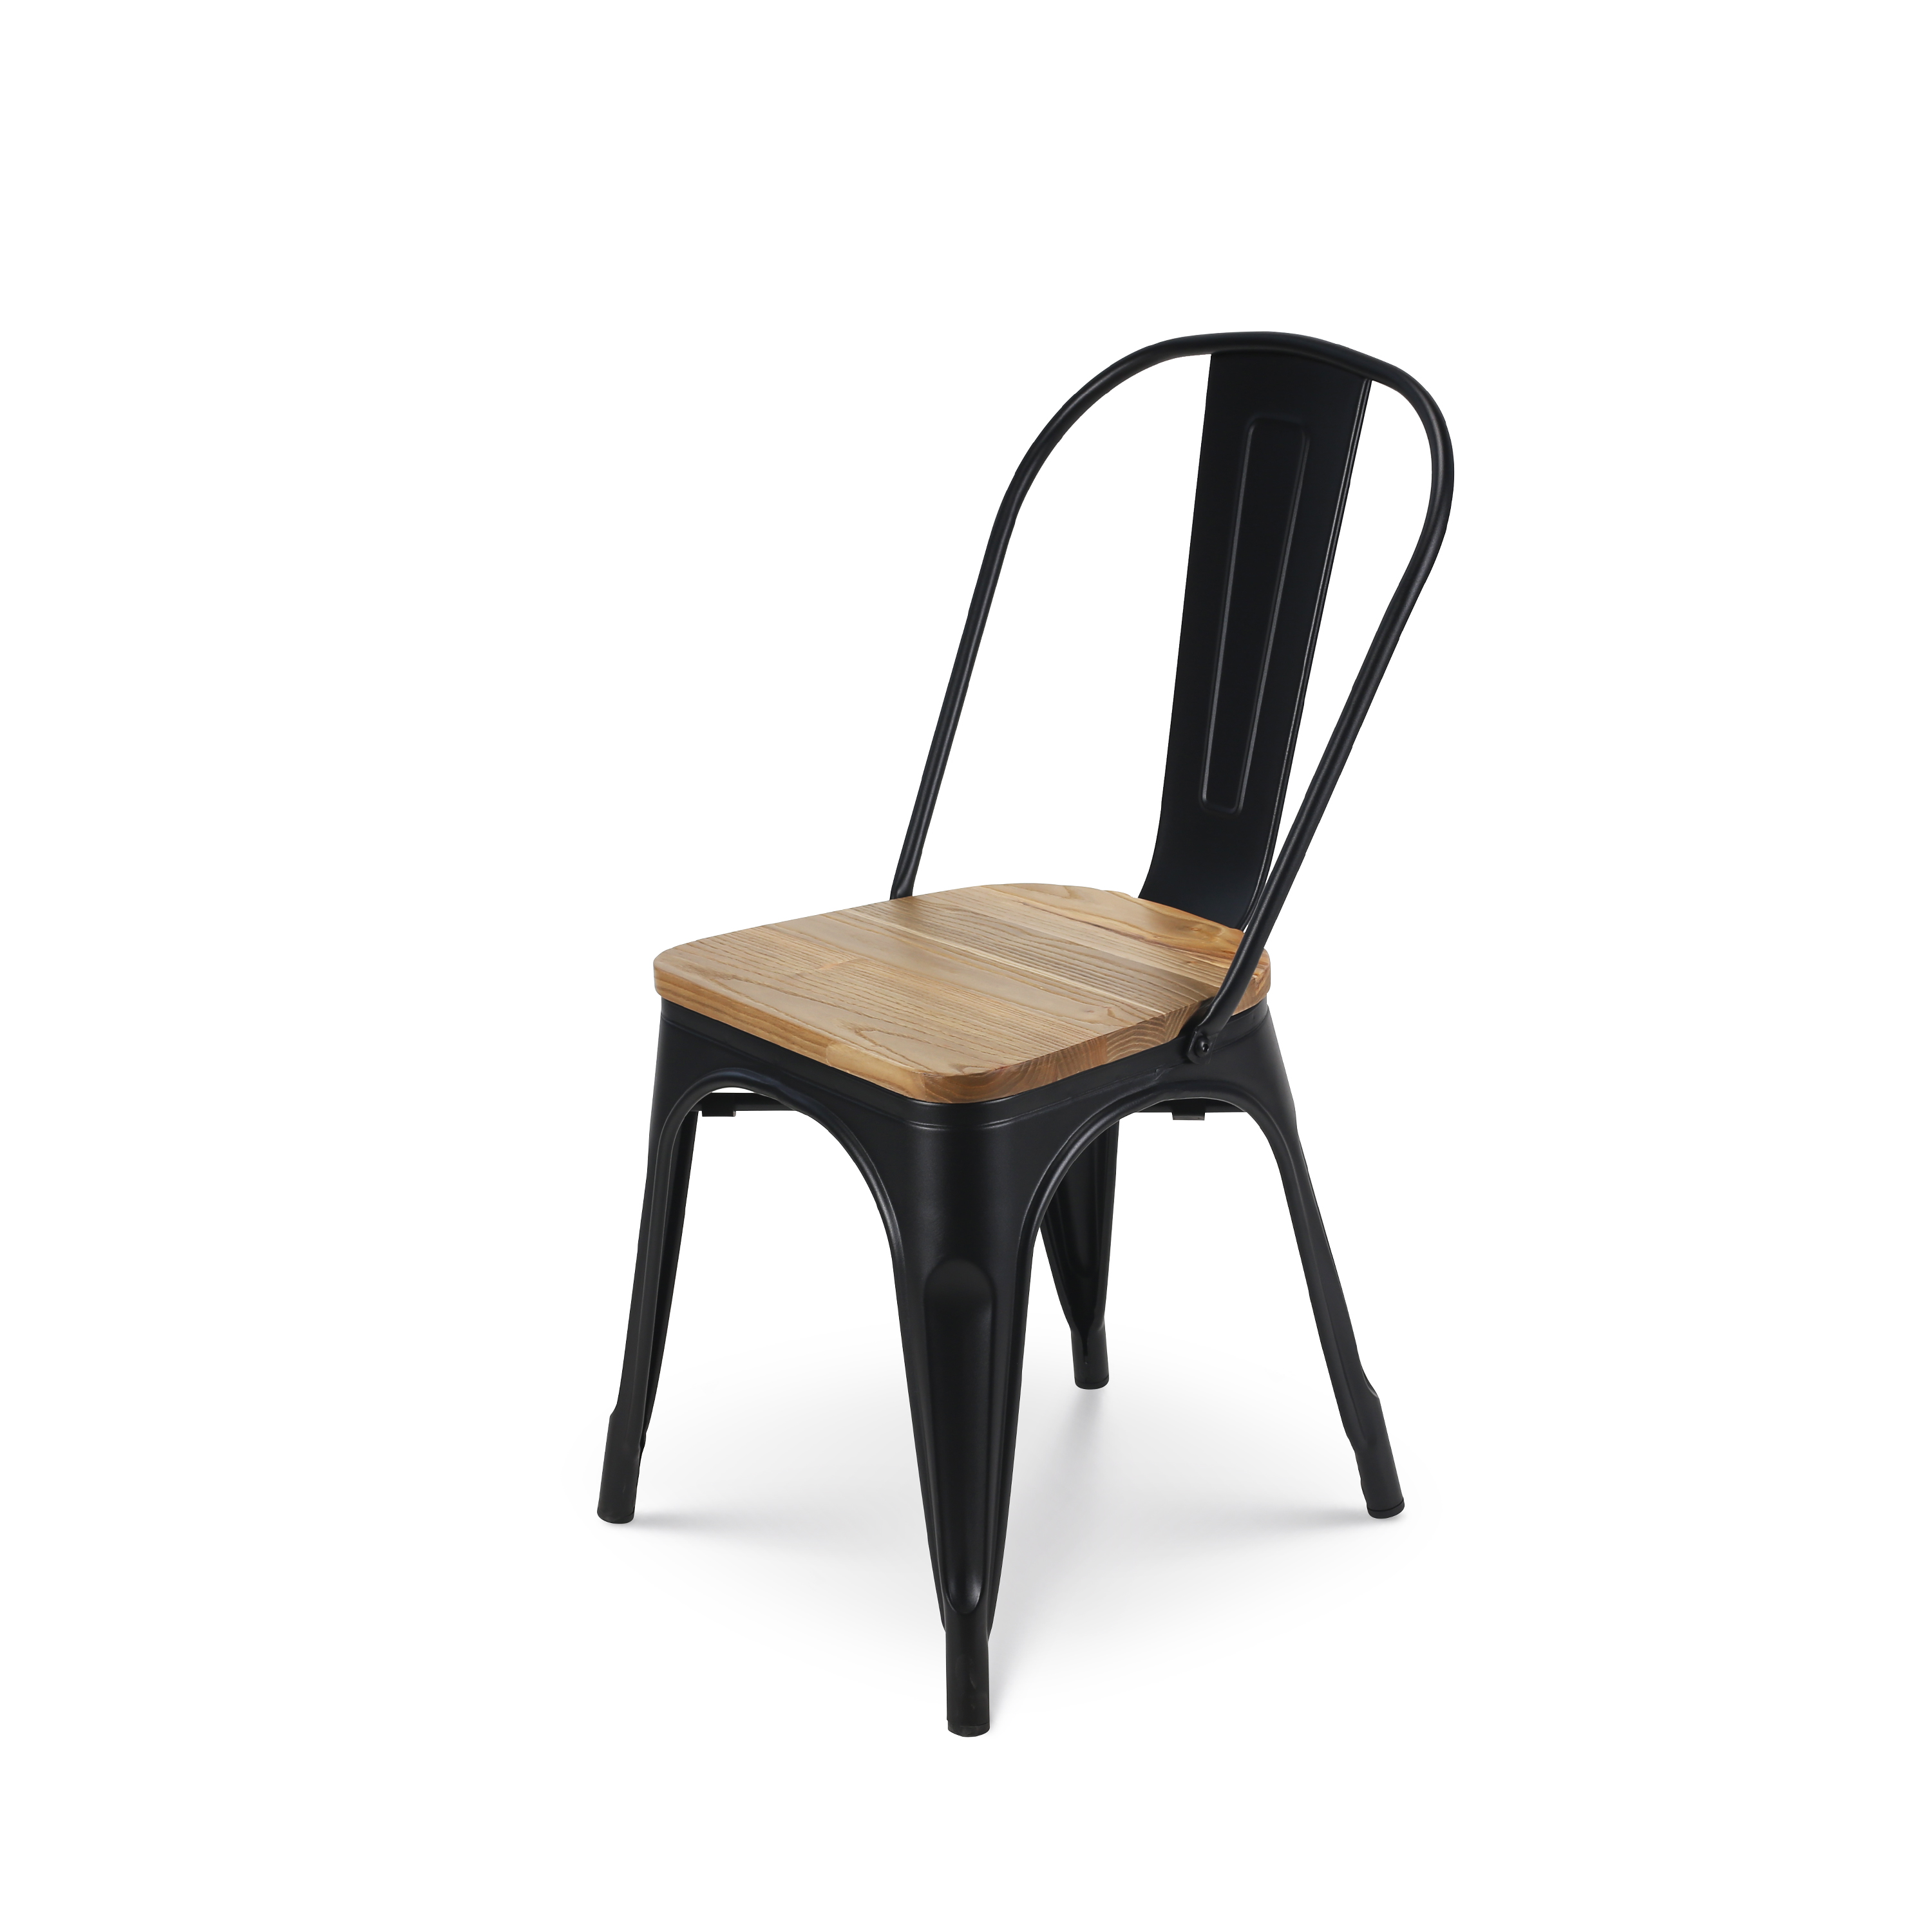 Chaise en métal noir mat et assise en bois clair - Style industriel